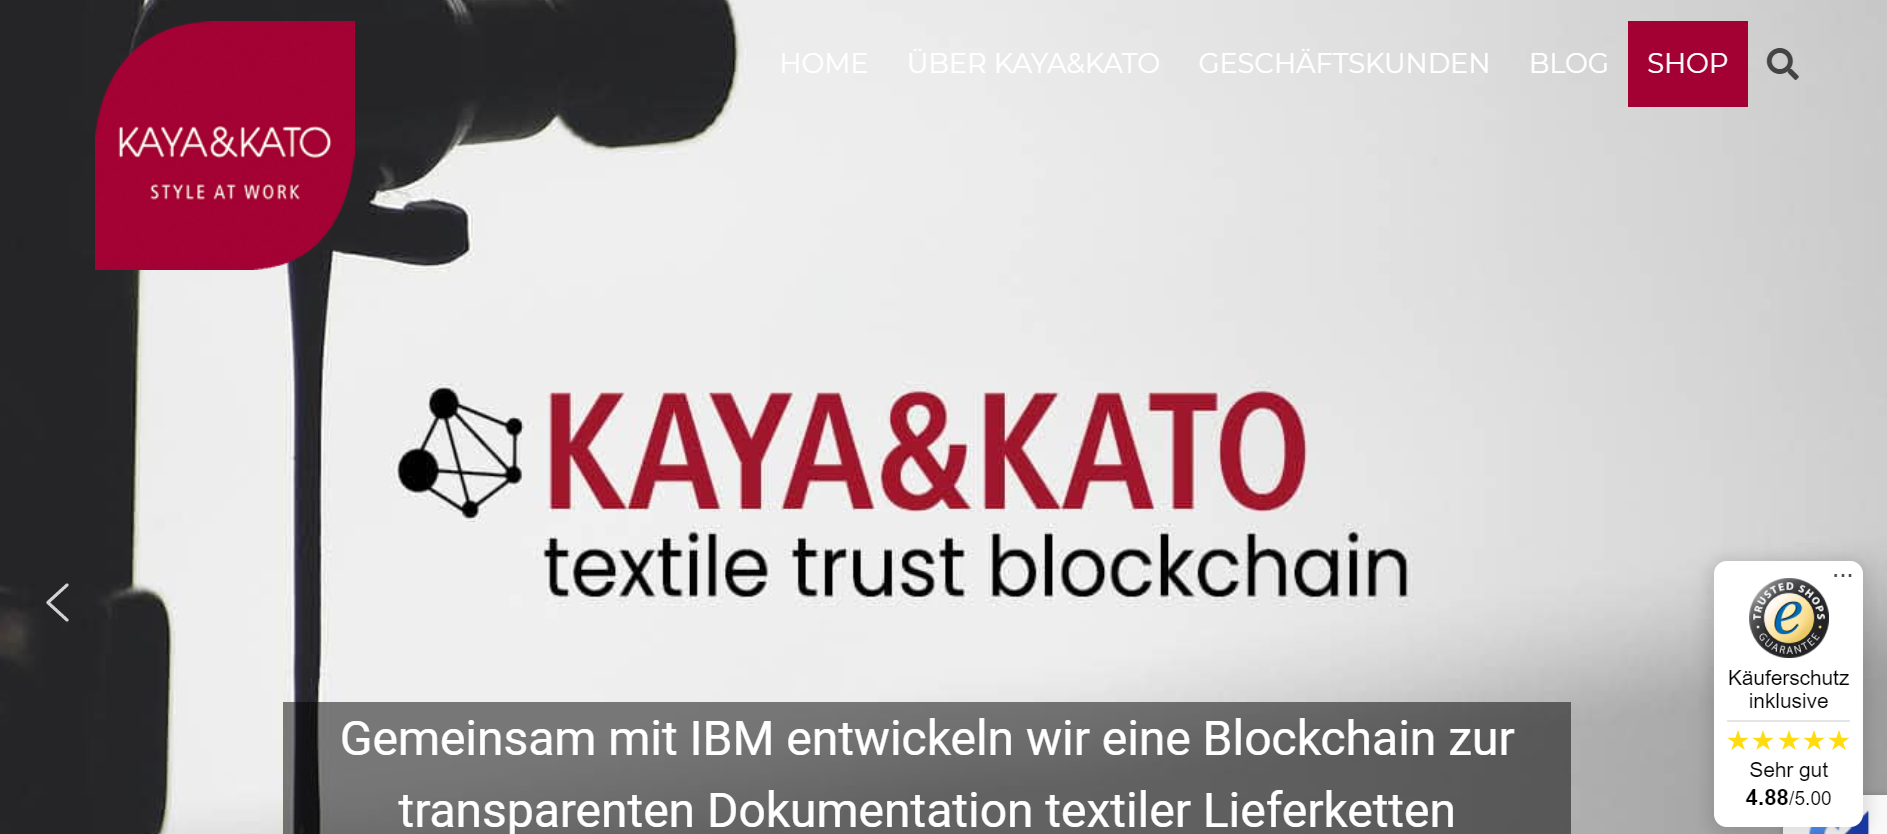 追踪时尚业所用面料的来源：IBM联手德国纺织品企业开发区块链网络